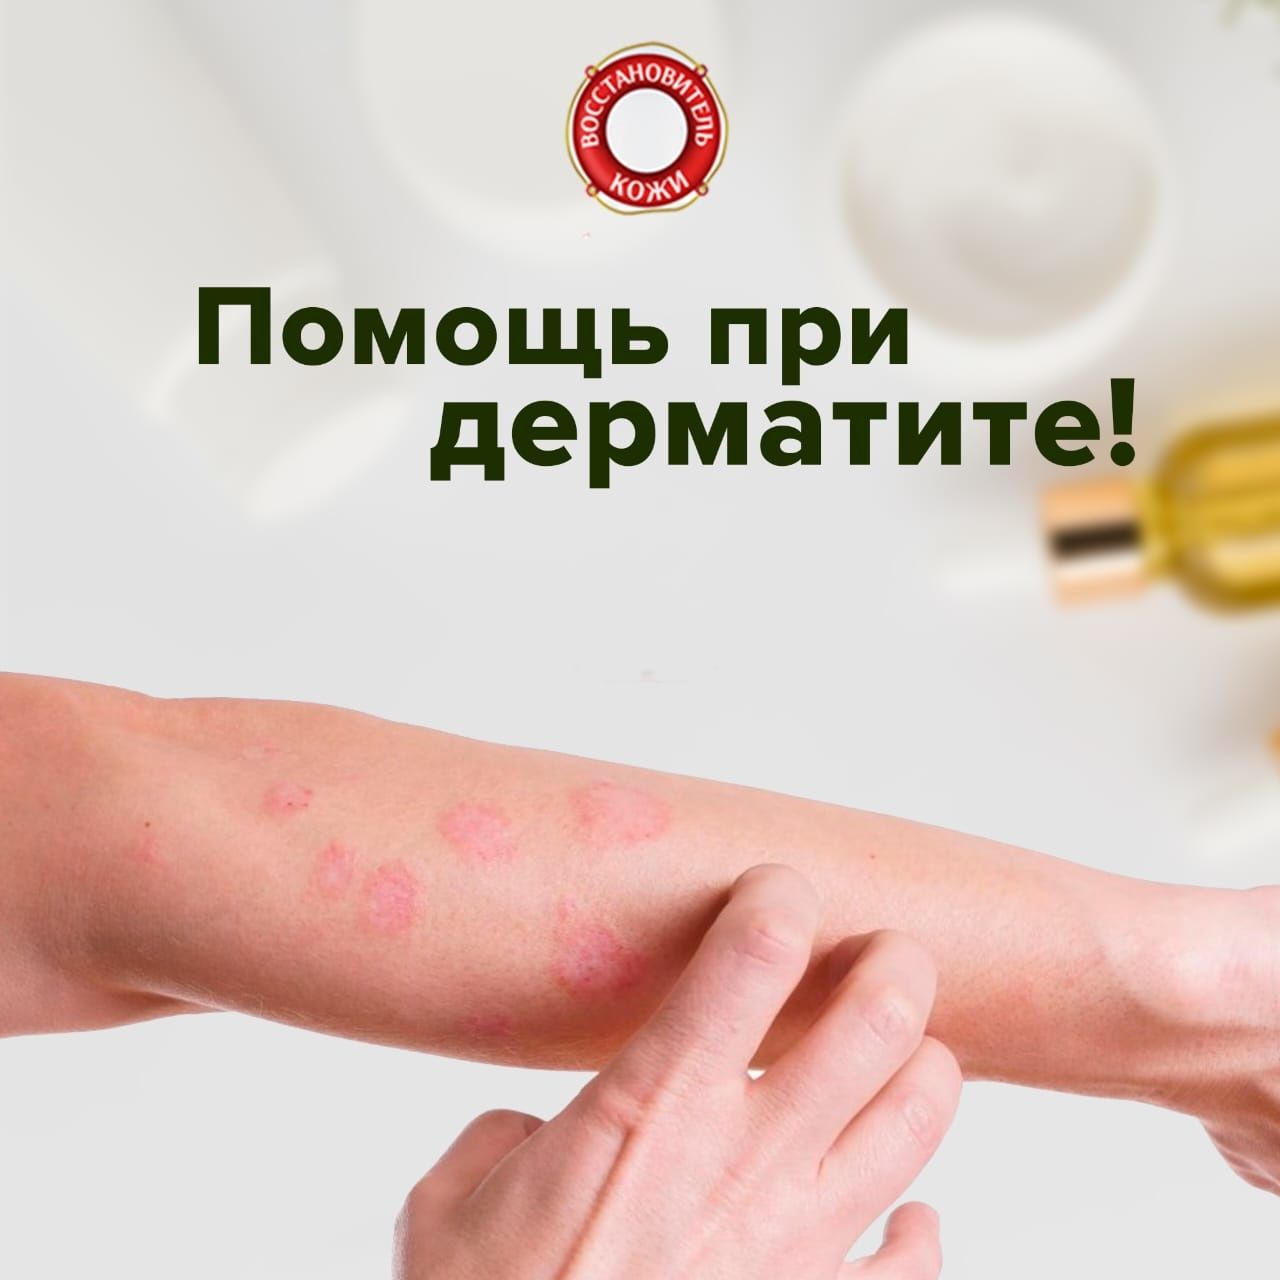 Помощь «Восстановитель кожи №1» при лечении дерматита